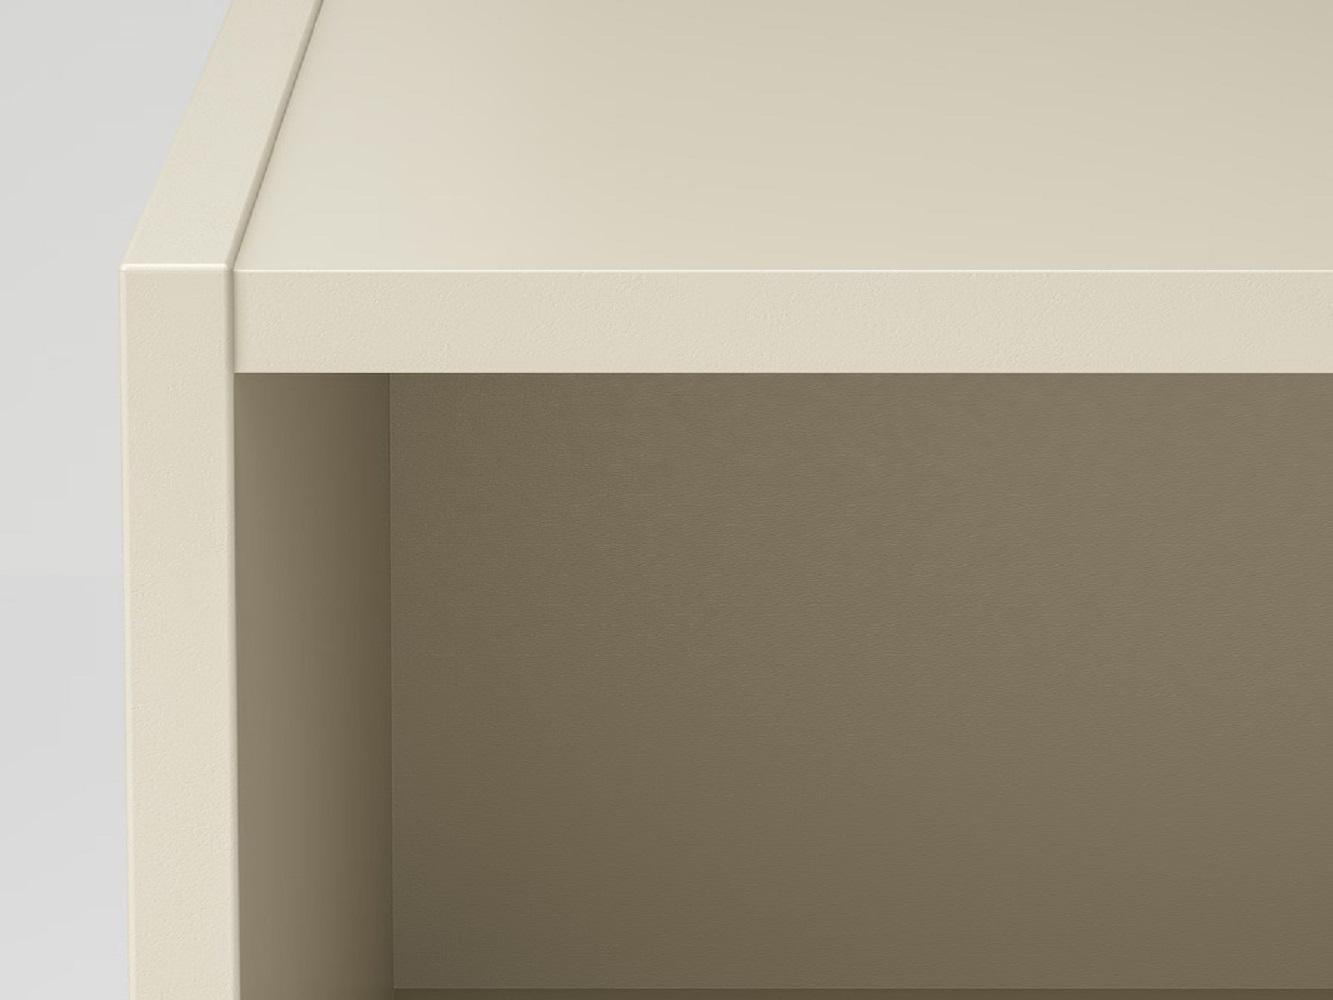 Стеллаж Гурскен GURSKEN 113 beige ИКЕА (IKEA) изображение товара